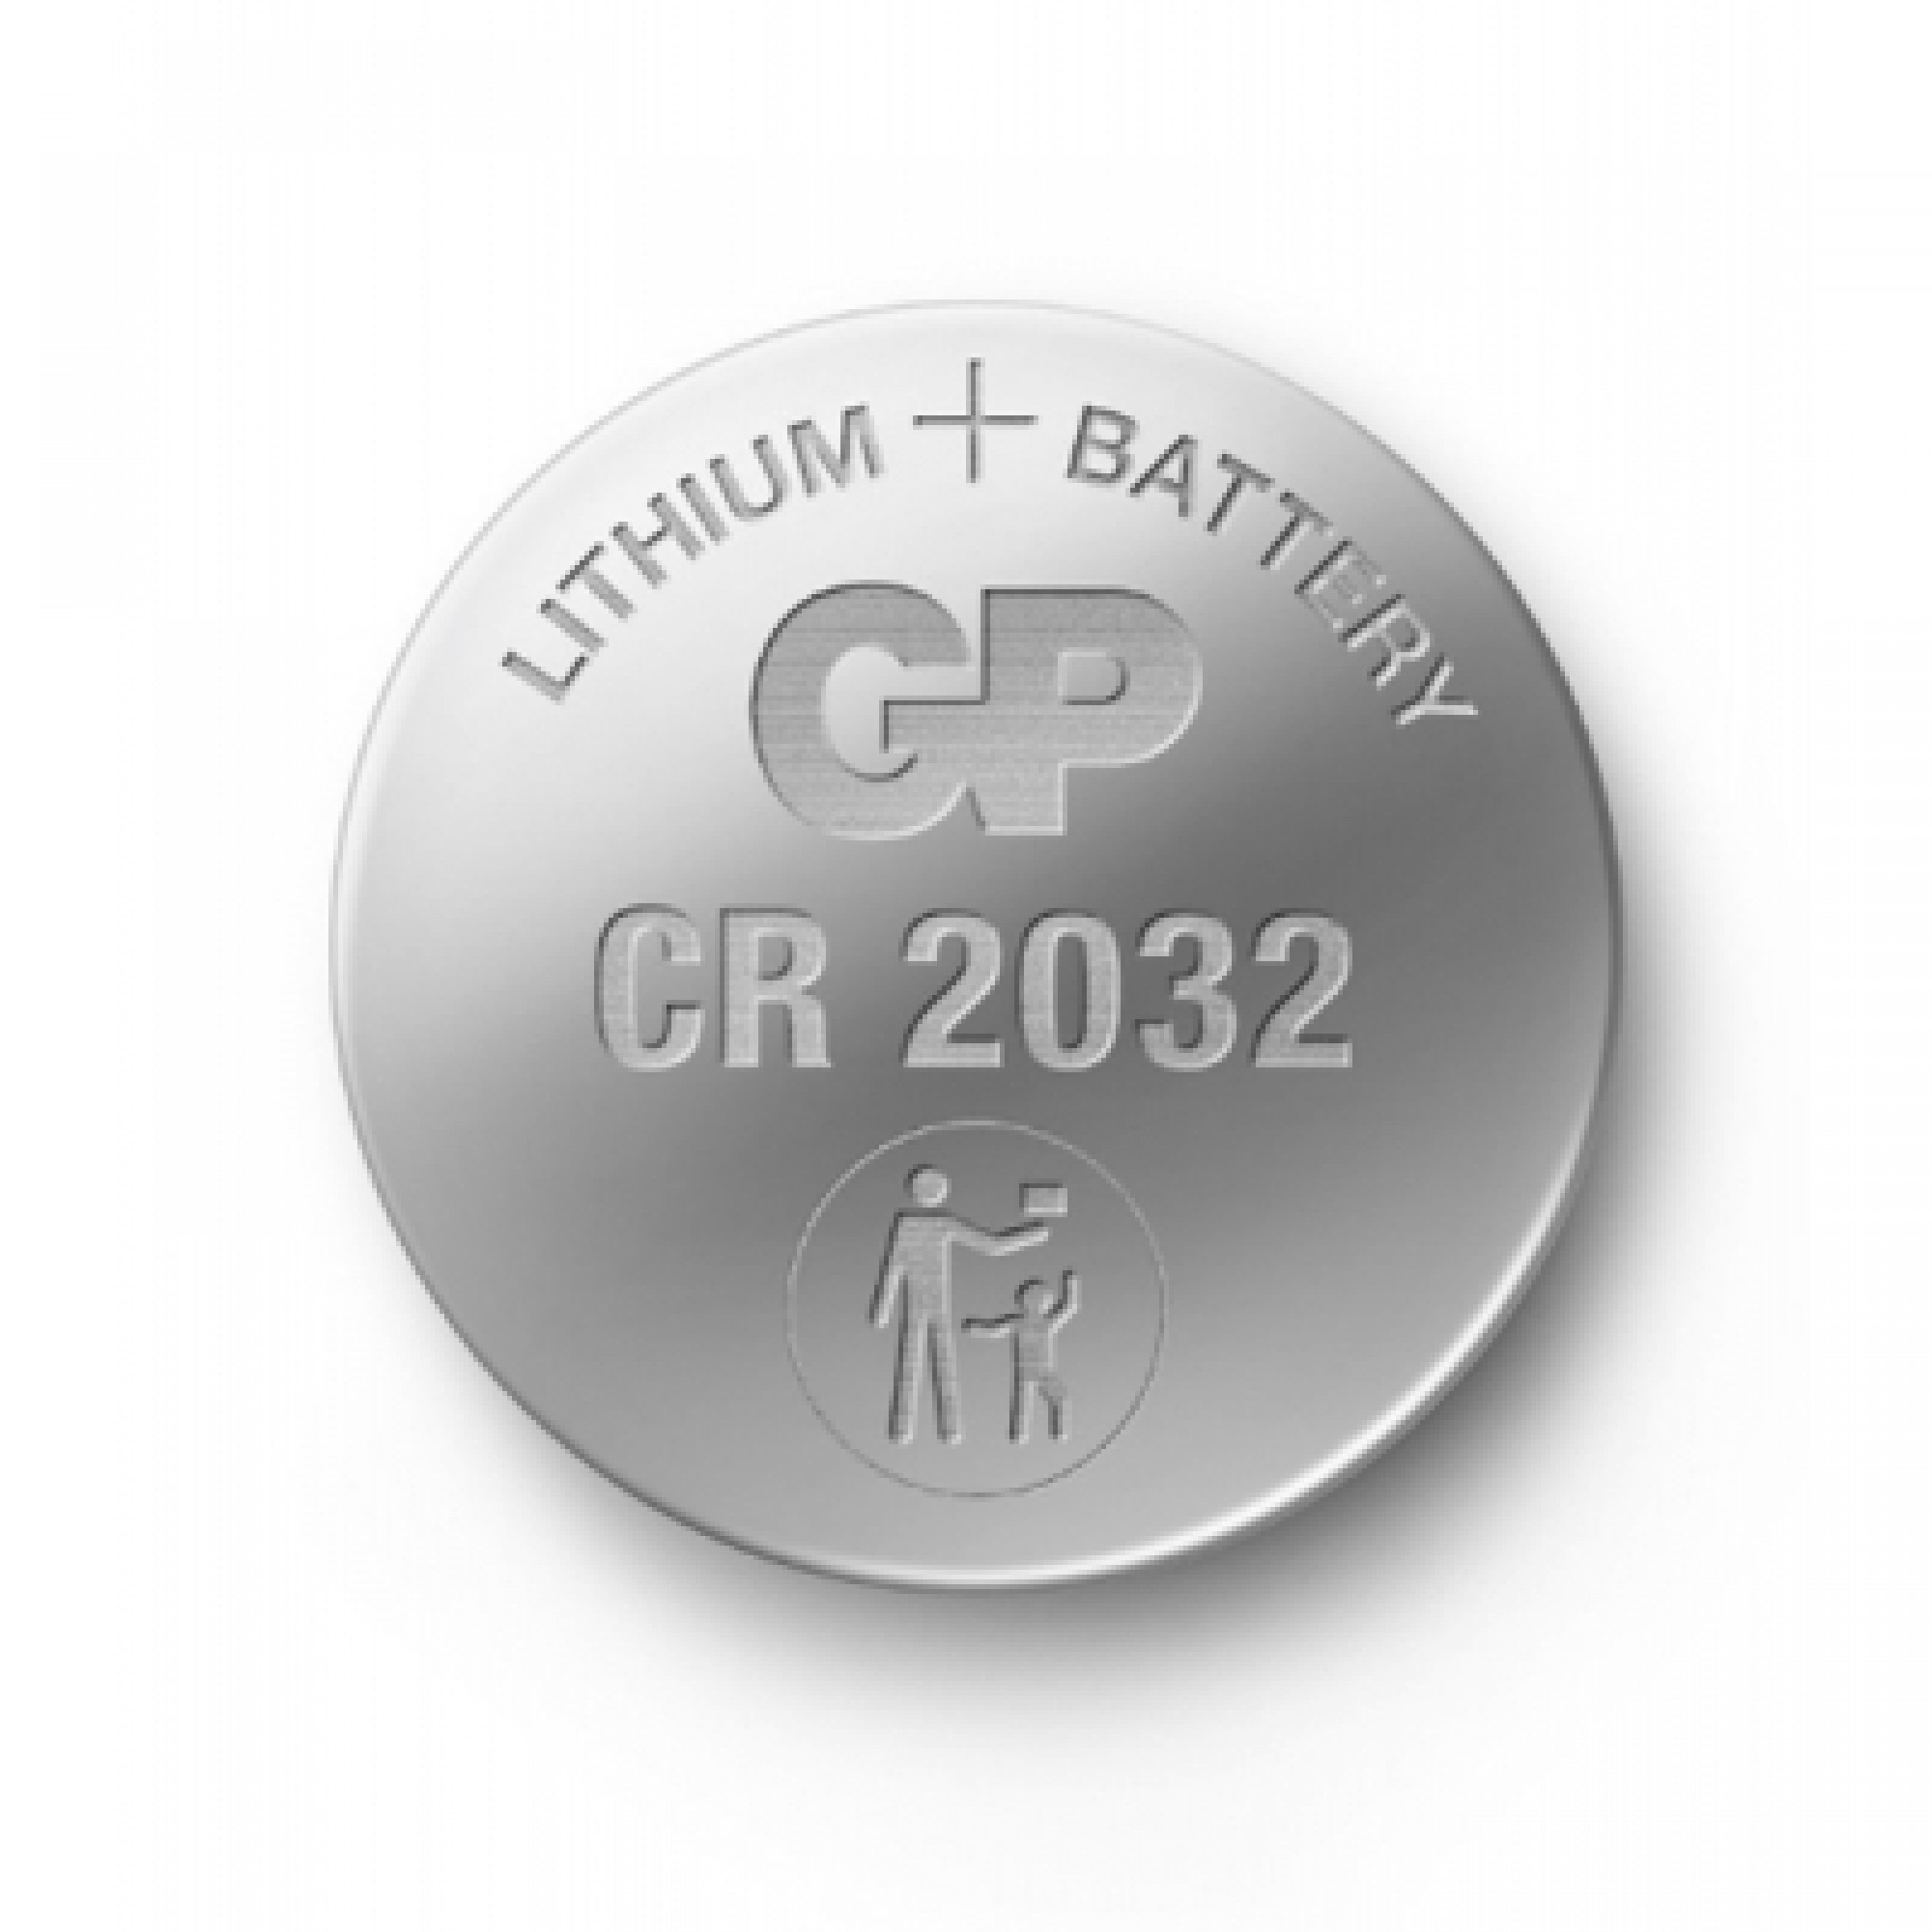 Батарейка Gp CR2032 3.0V * 1 (CR2032-U1 / CR2032 / 4891199003721)